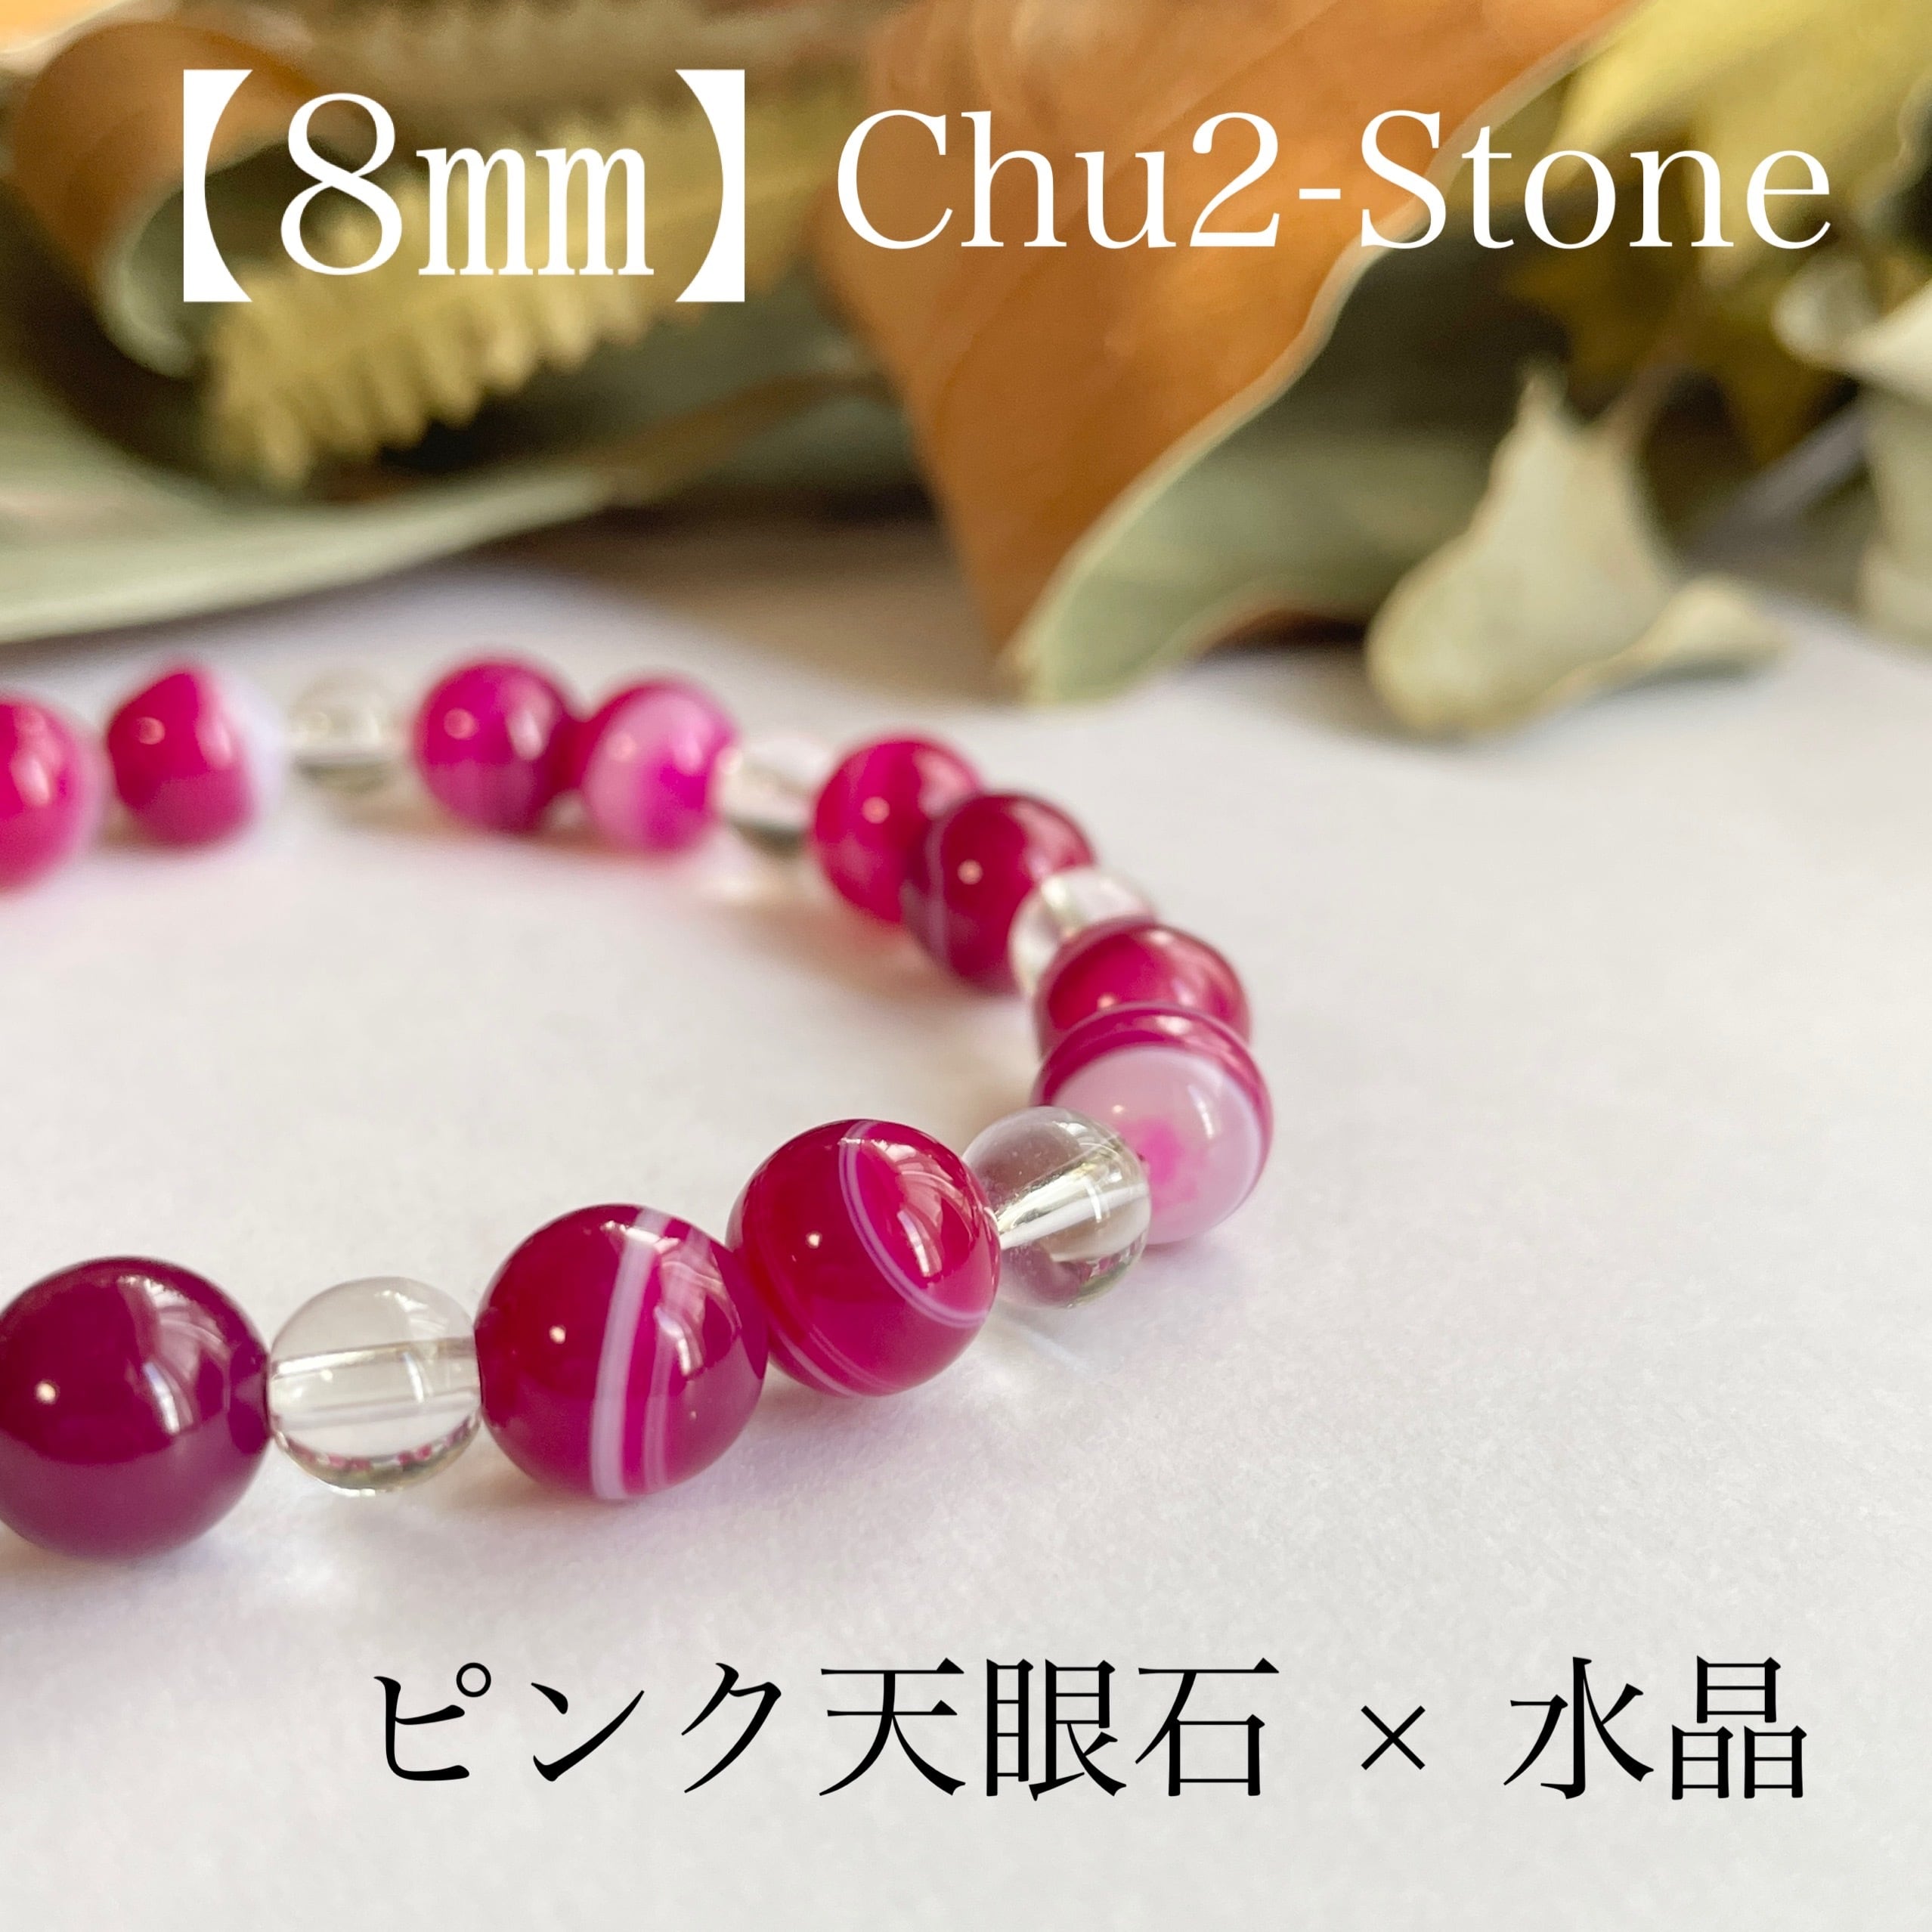 天然石ブレスレット ピンク天眼石×水晶 【8mm】 | chu2stone